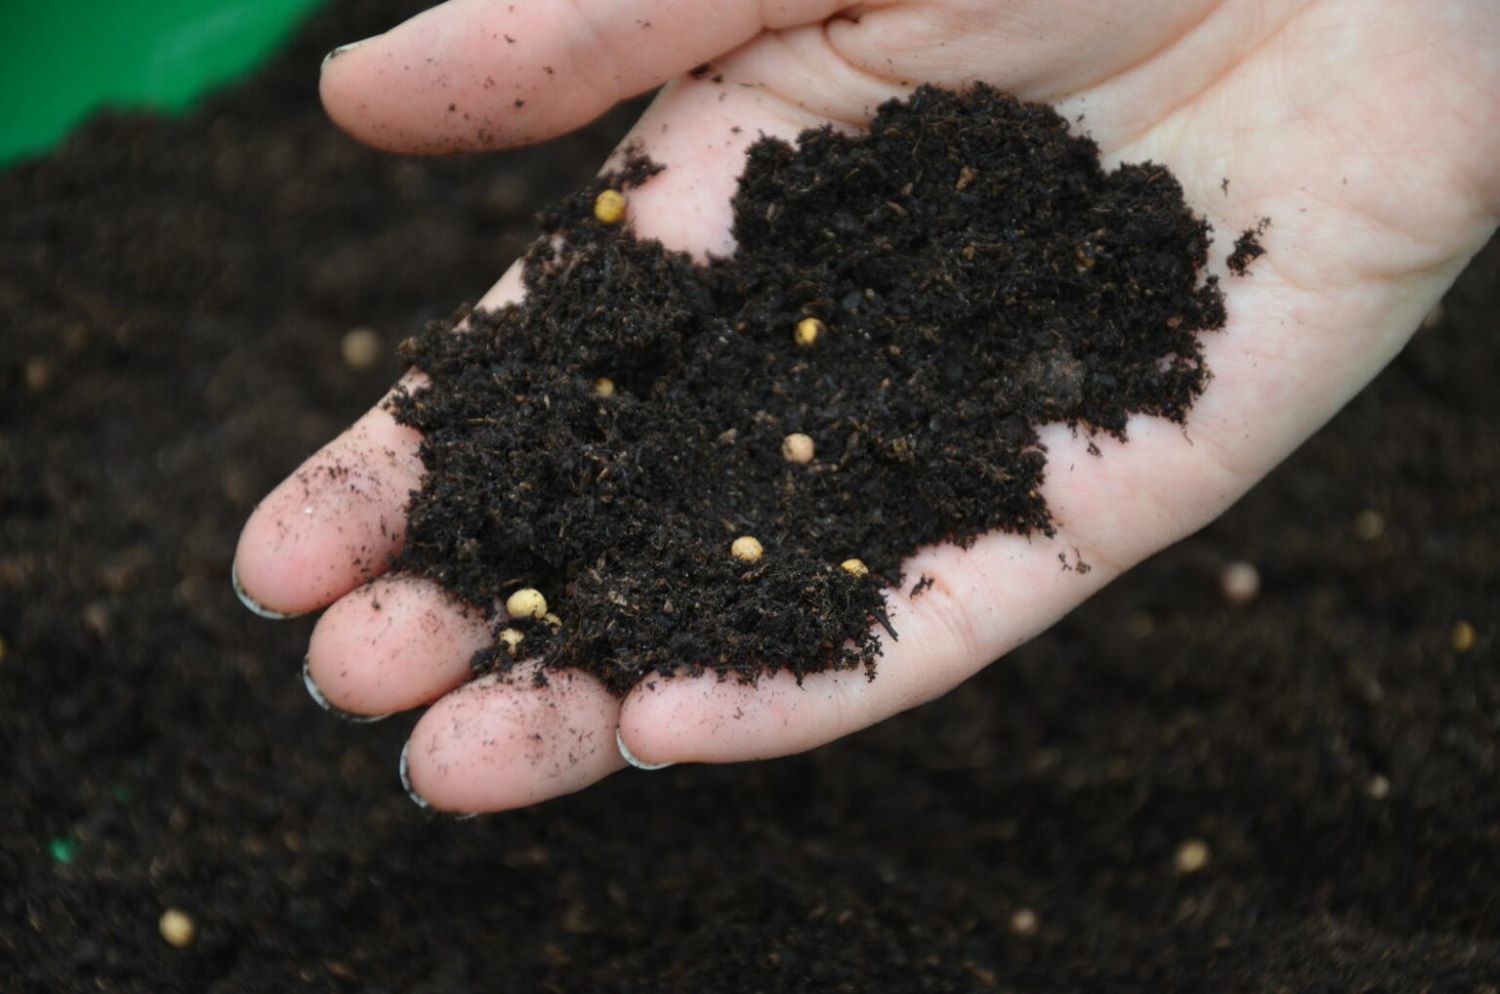 Hand holding soil with fertiliser beads